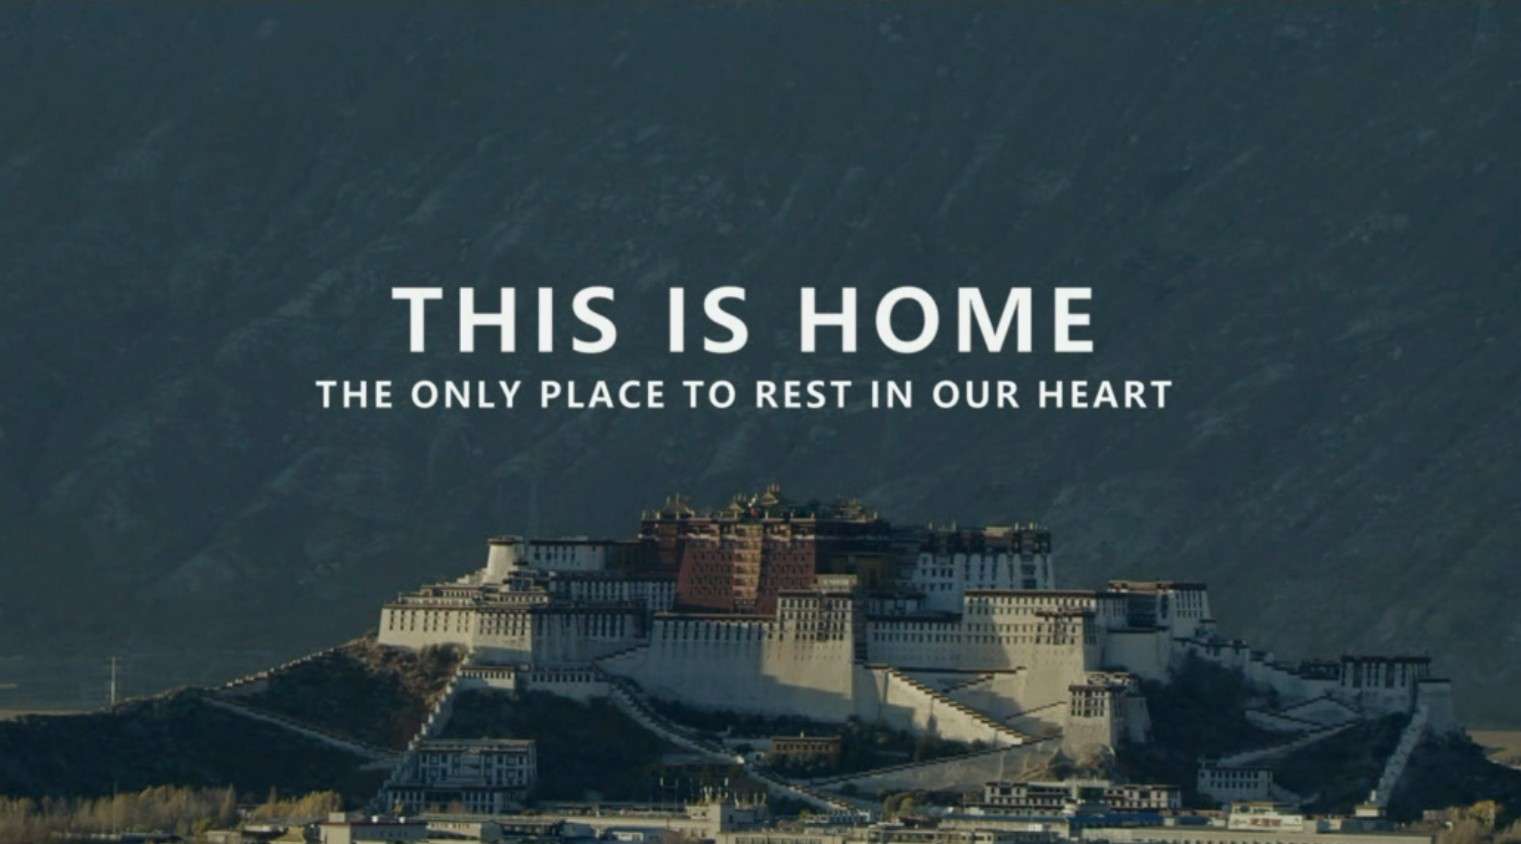 【形象】西藏藏语卫视形象片《回归心灵的家园》